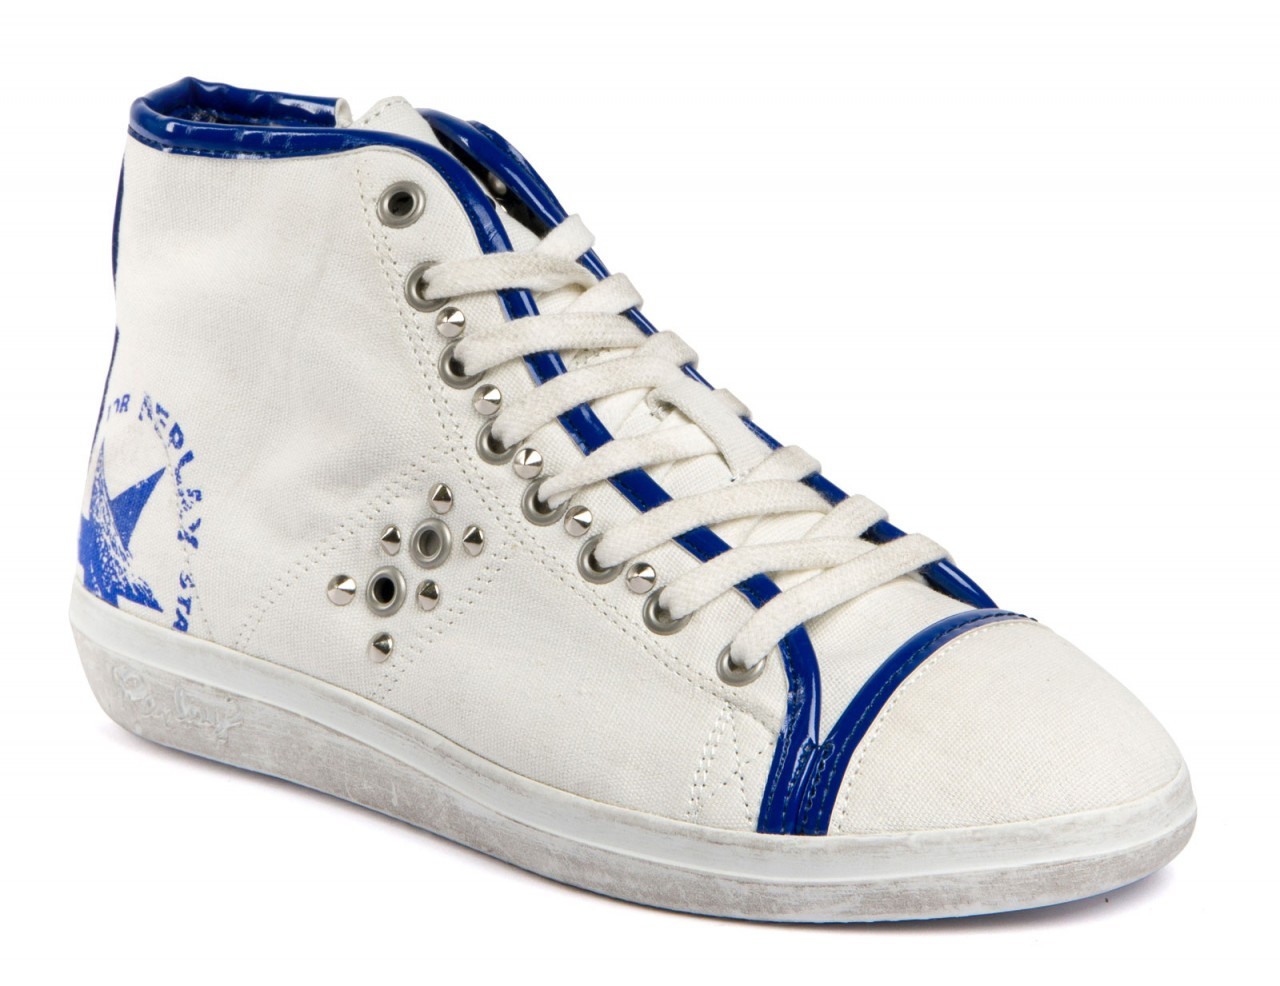 Replay kék-fehér szegecses tornacipő fotója